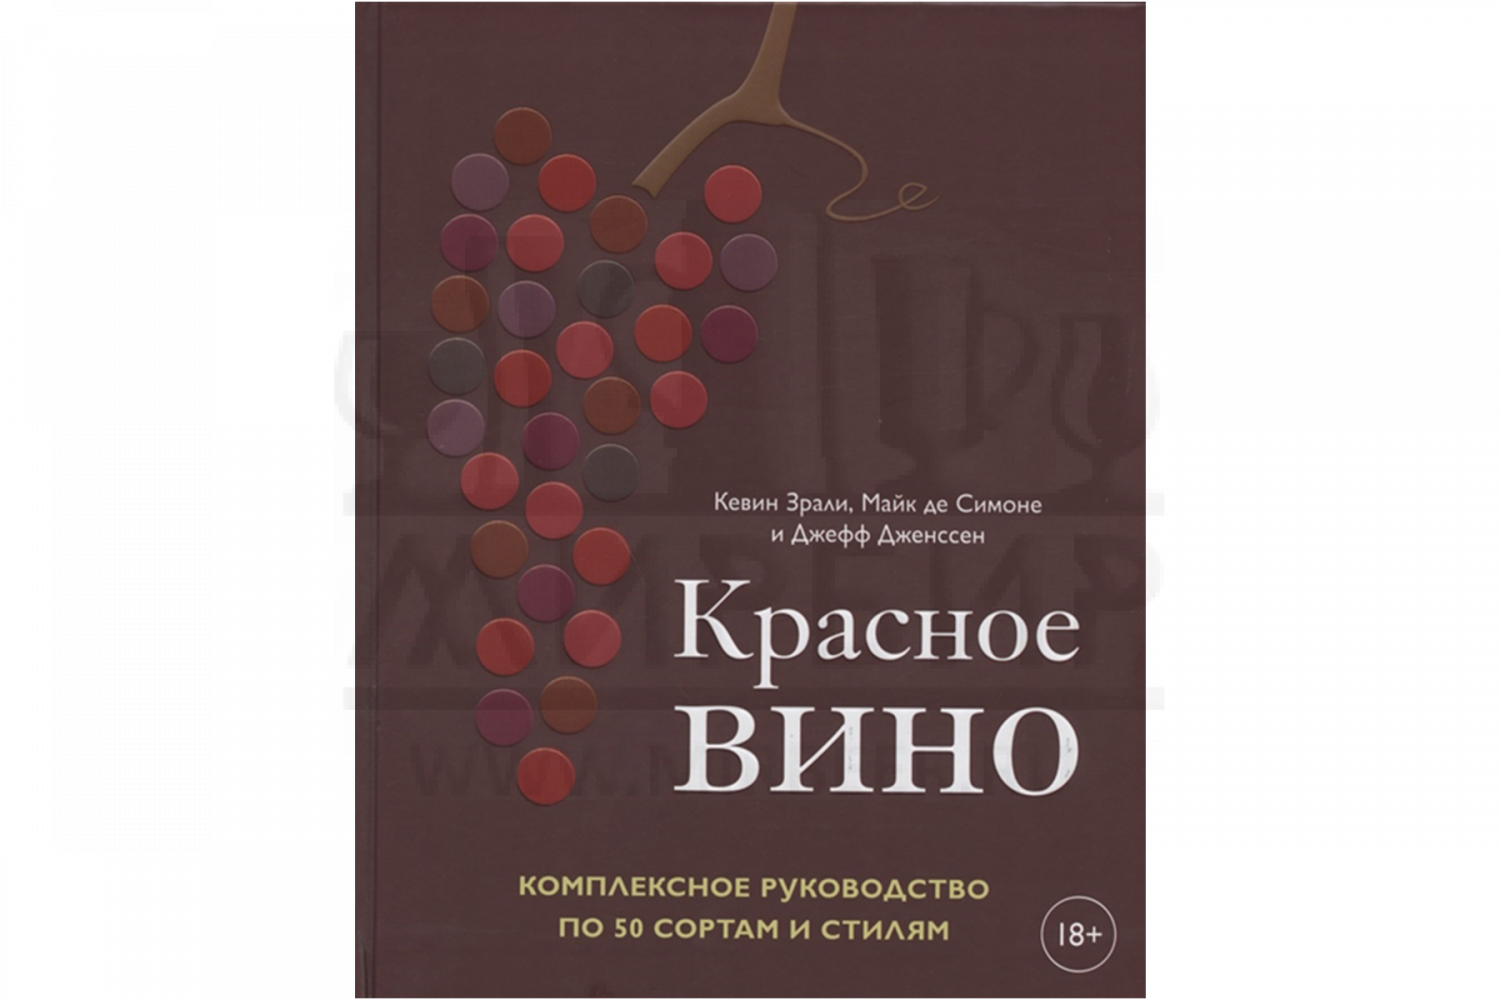 Элементы книги. Производство красного вина